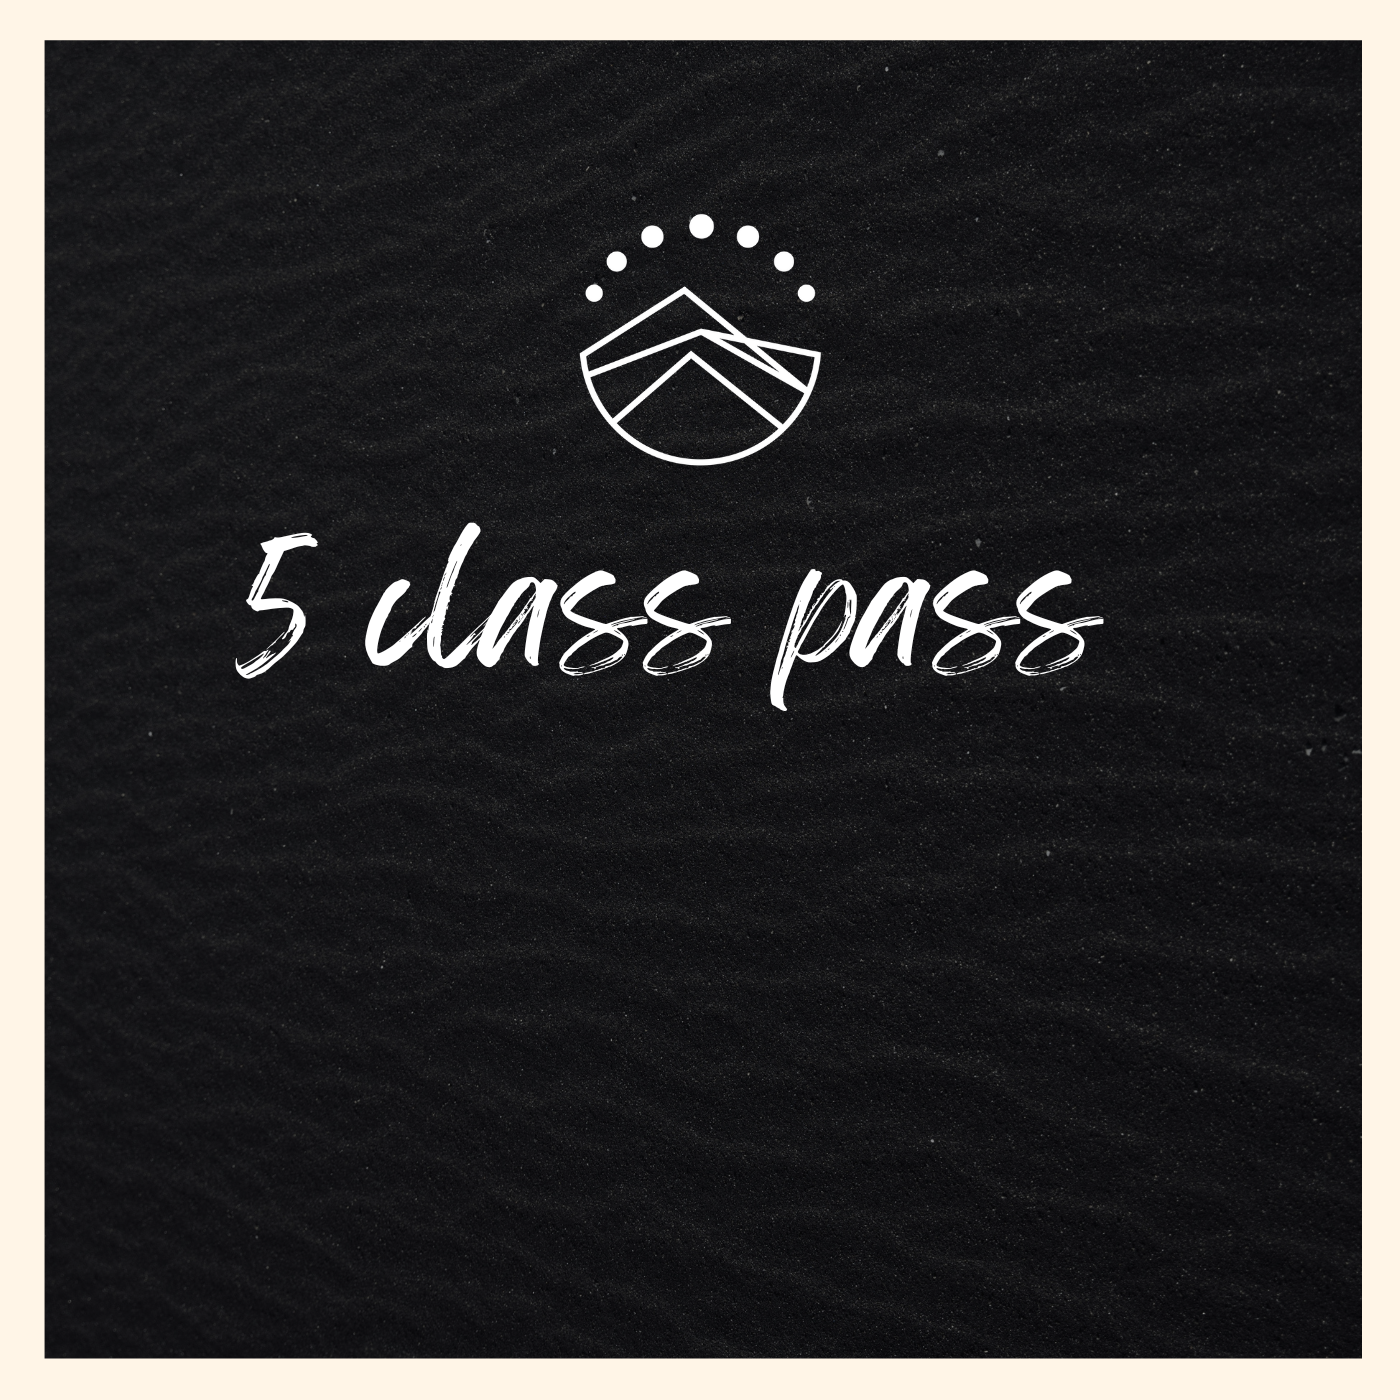 5 Class Pass